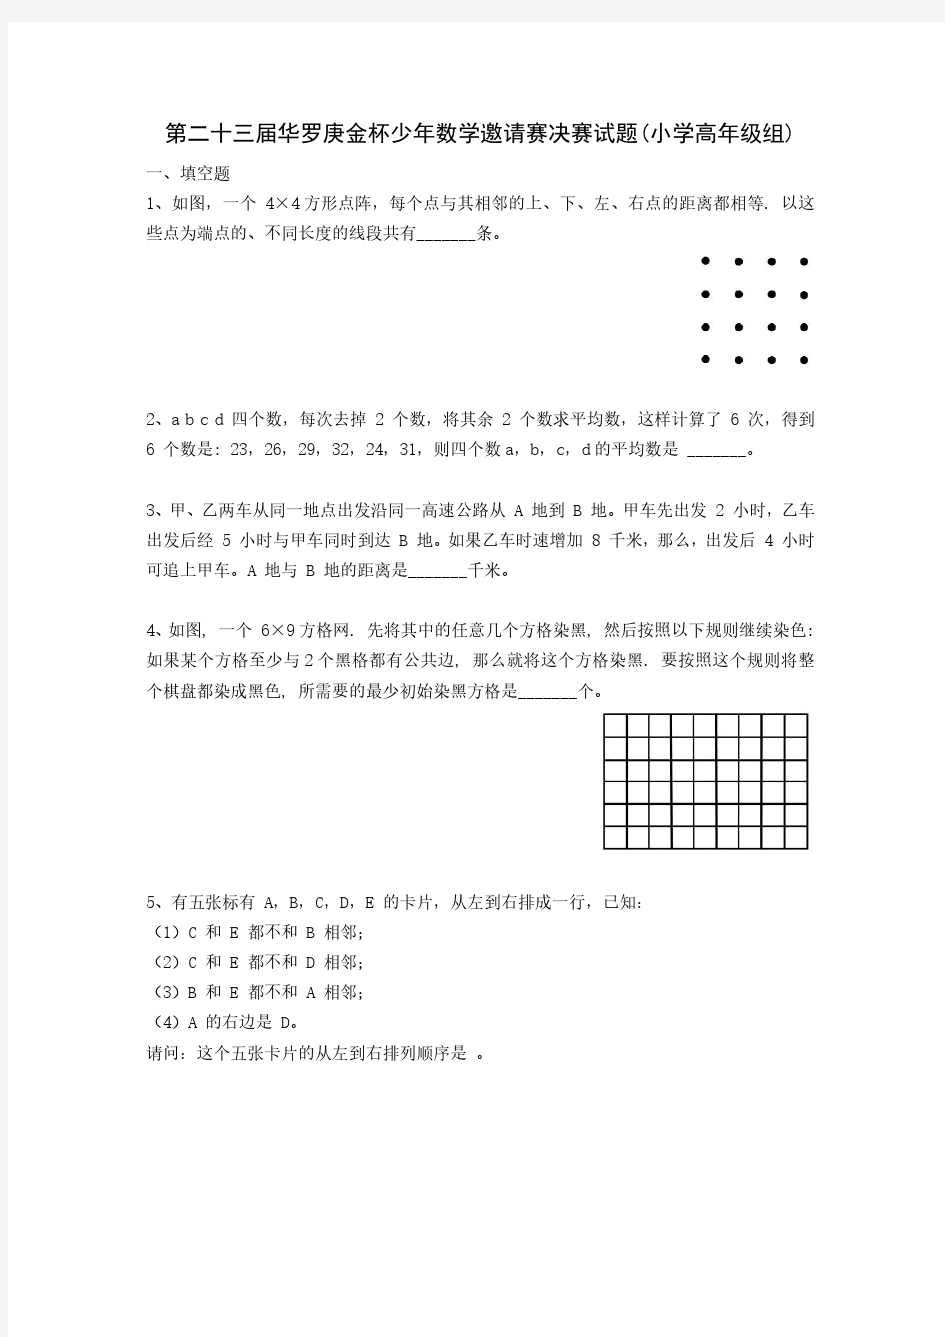 广州-3-第二十三届华罗庚金杯少年数学邀请赛决赛试题(小学高年级组)